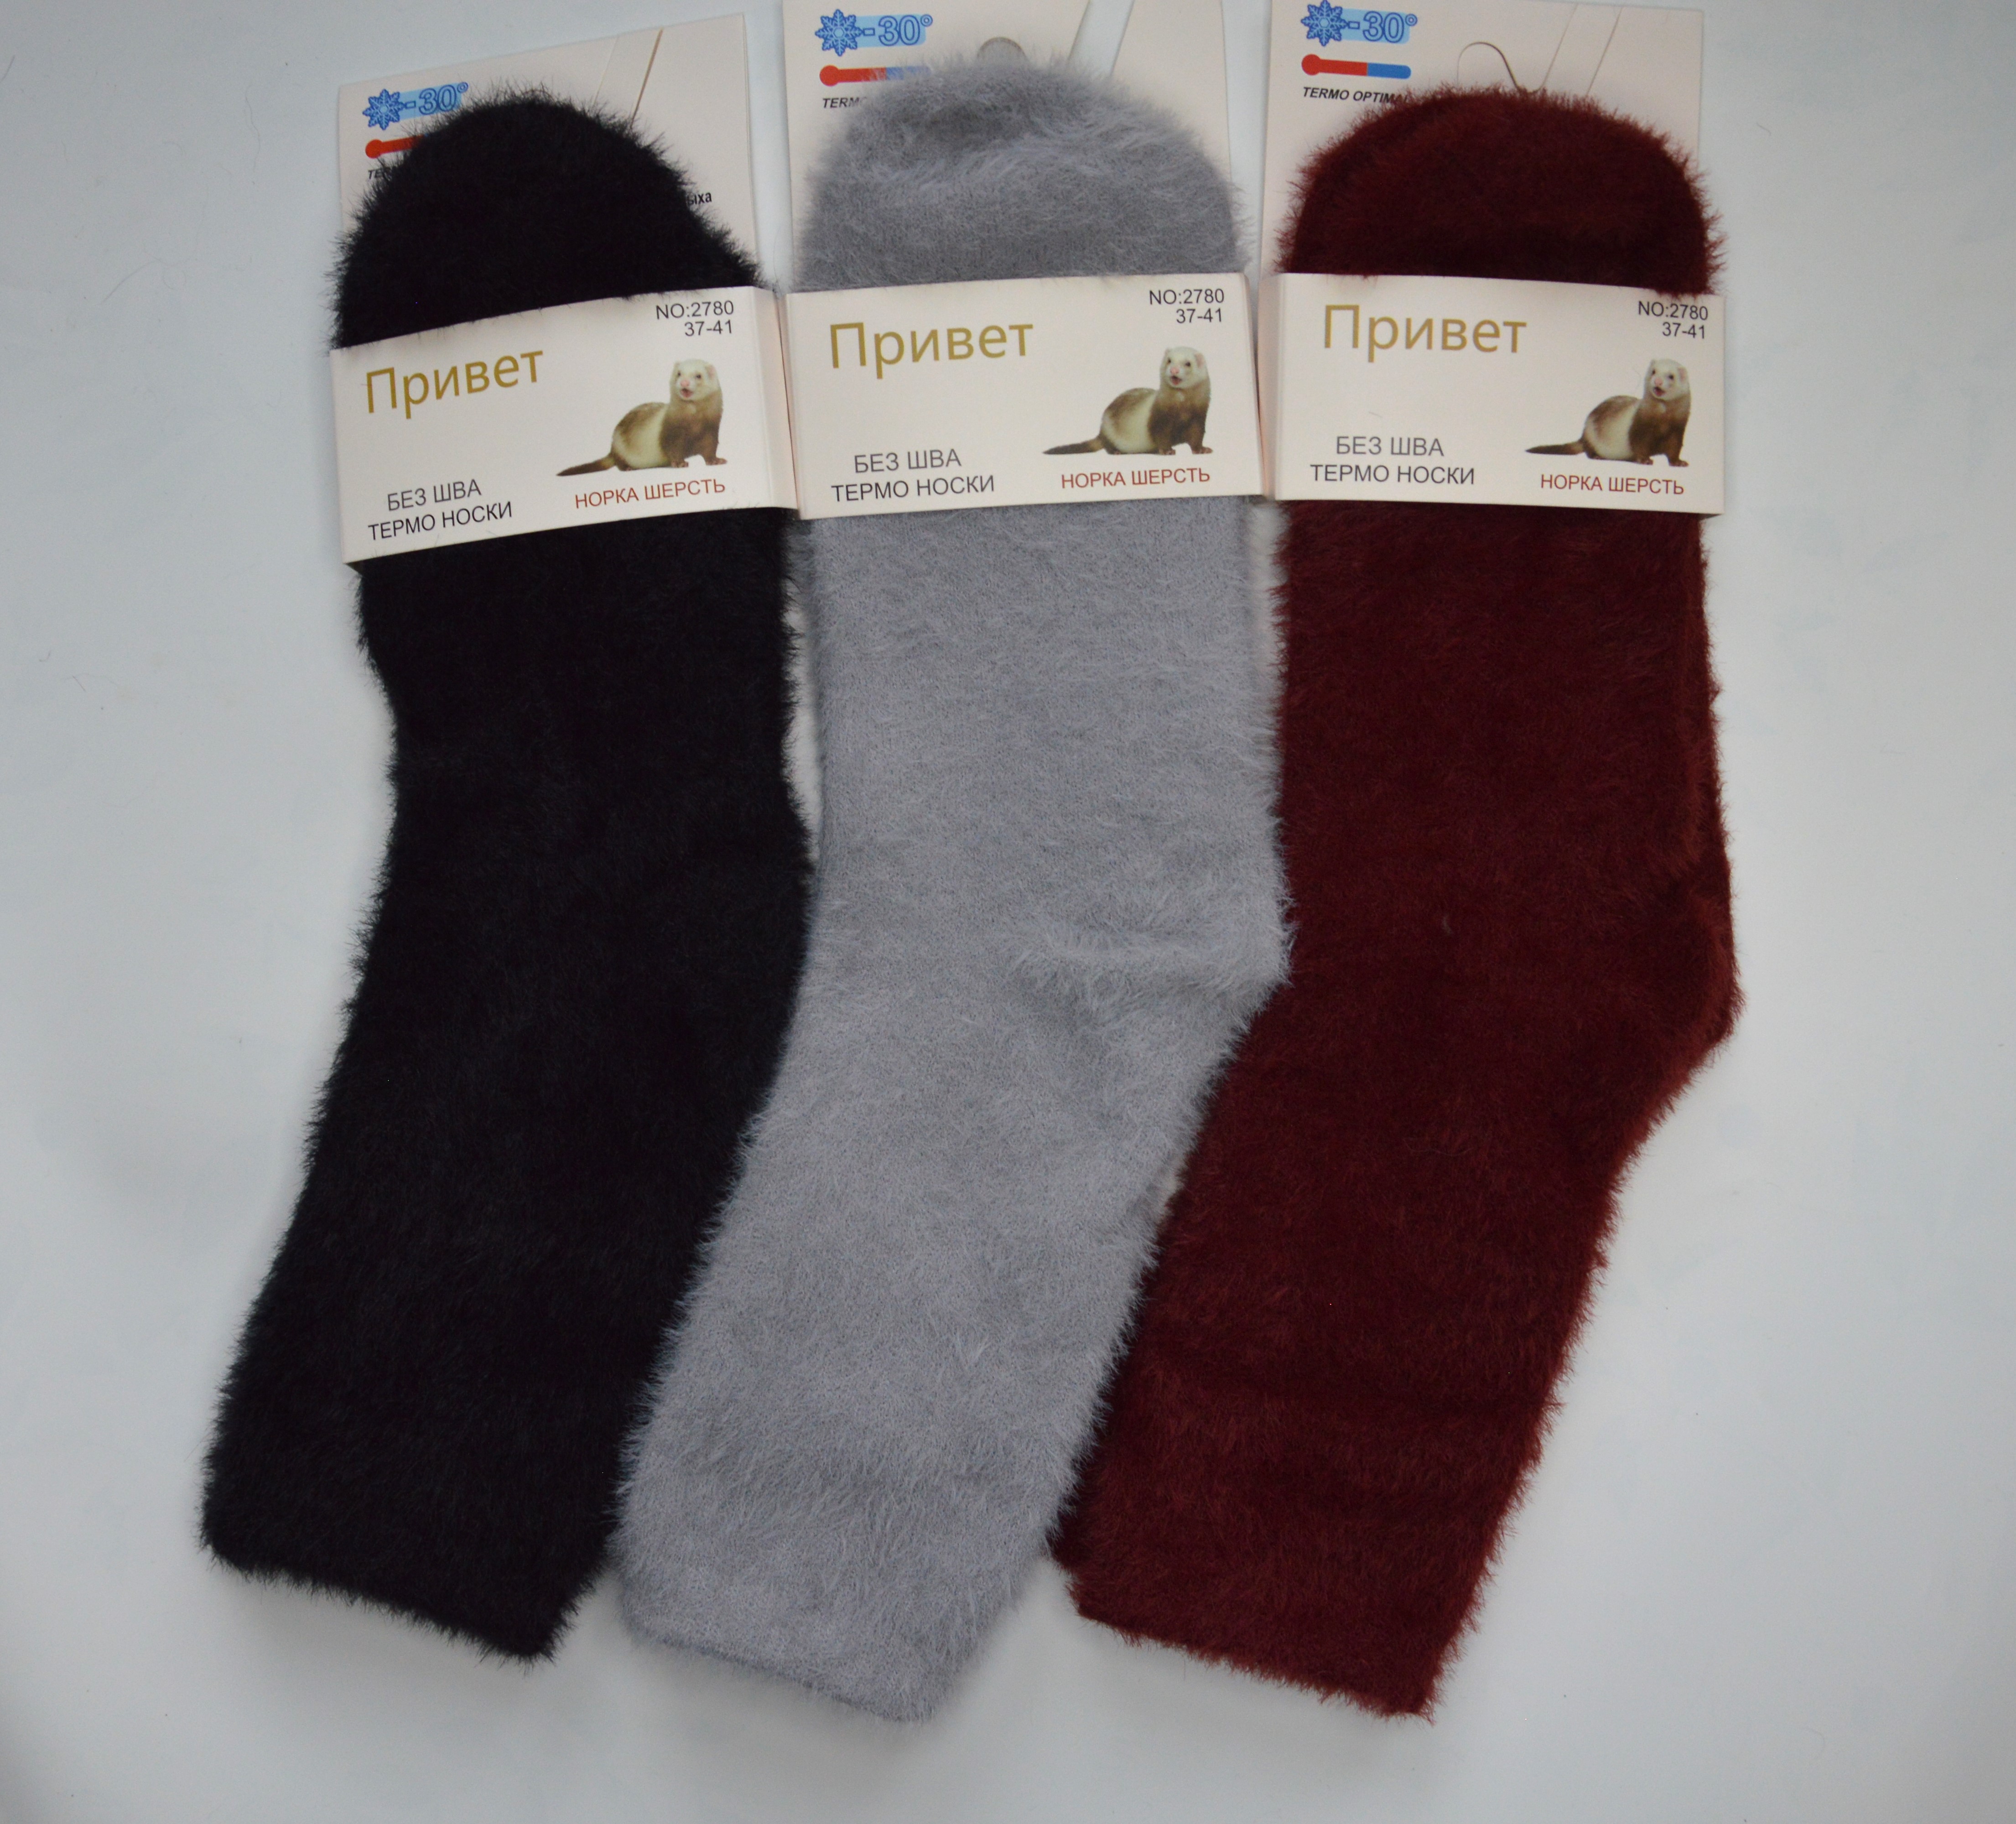 Комплект носков женских Привет Super разноцветных 37-41, 3 пары